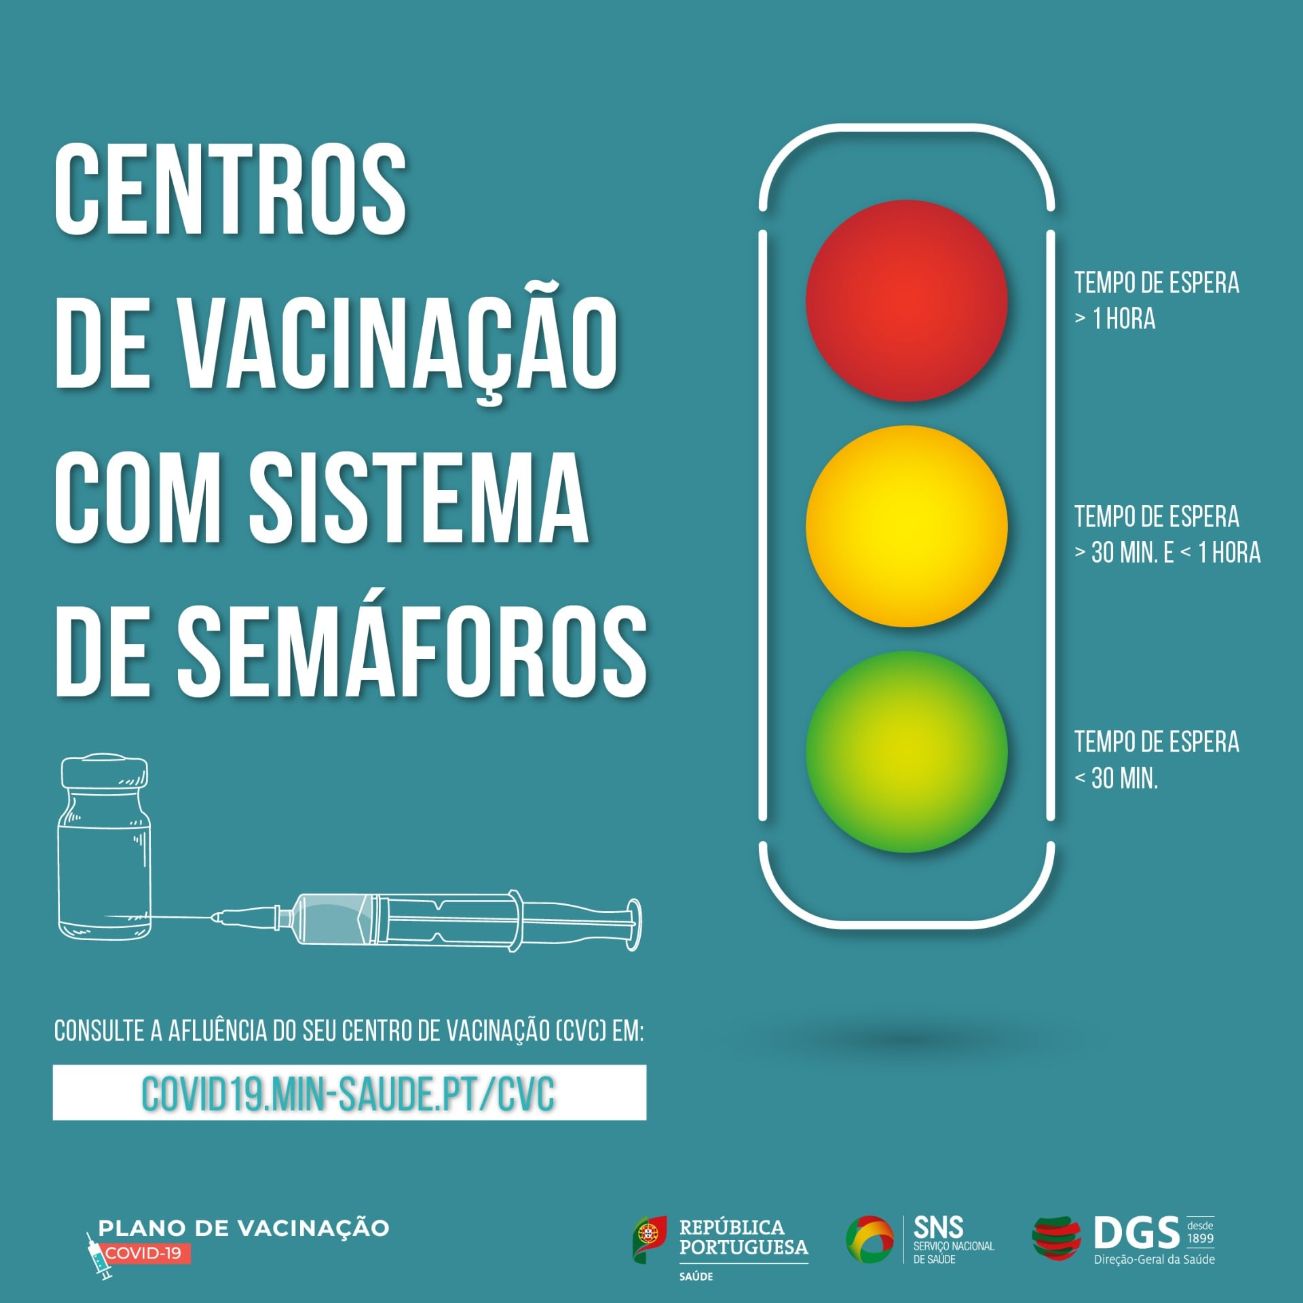 Centros de Vacinação com sistema de semáforos